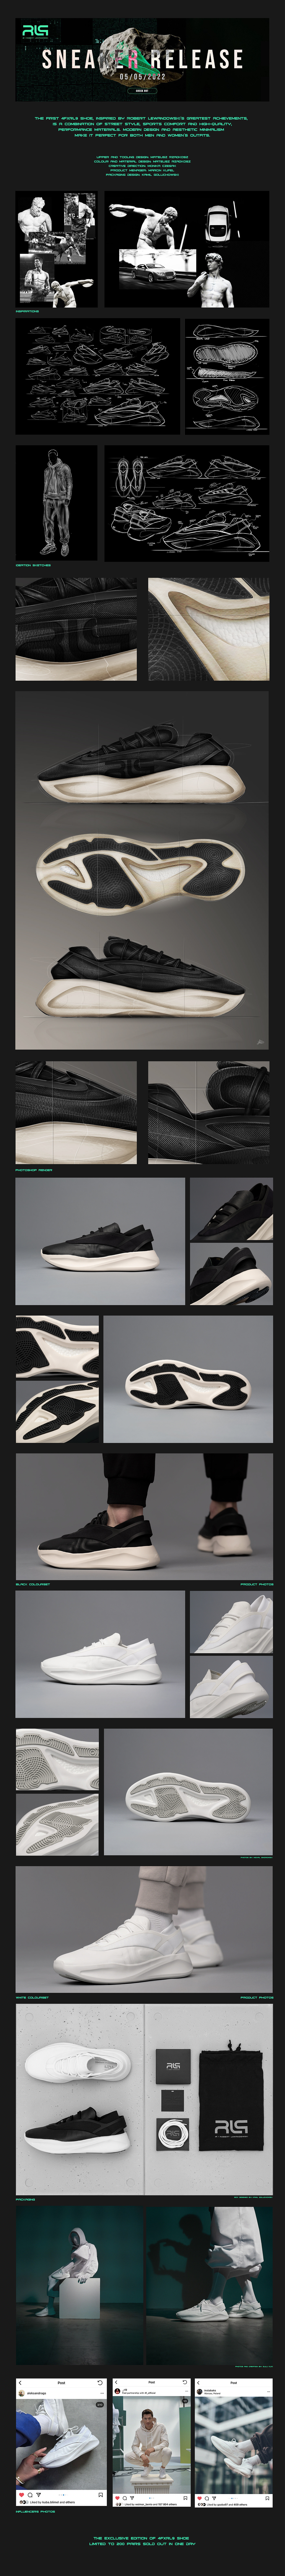 design Fashion  football footwear footwear design lewandowski sneaker sneakers soccer Sports Design